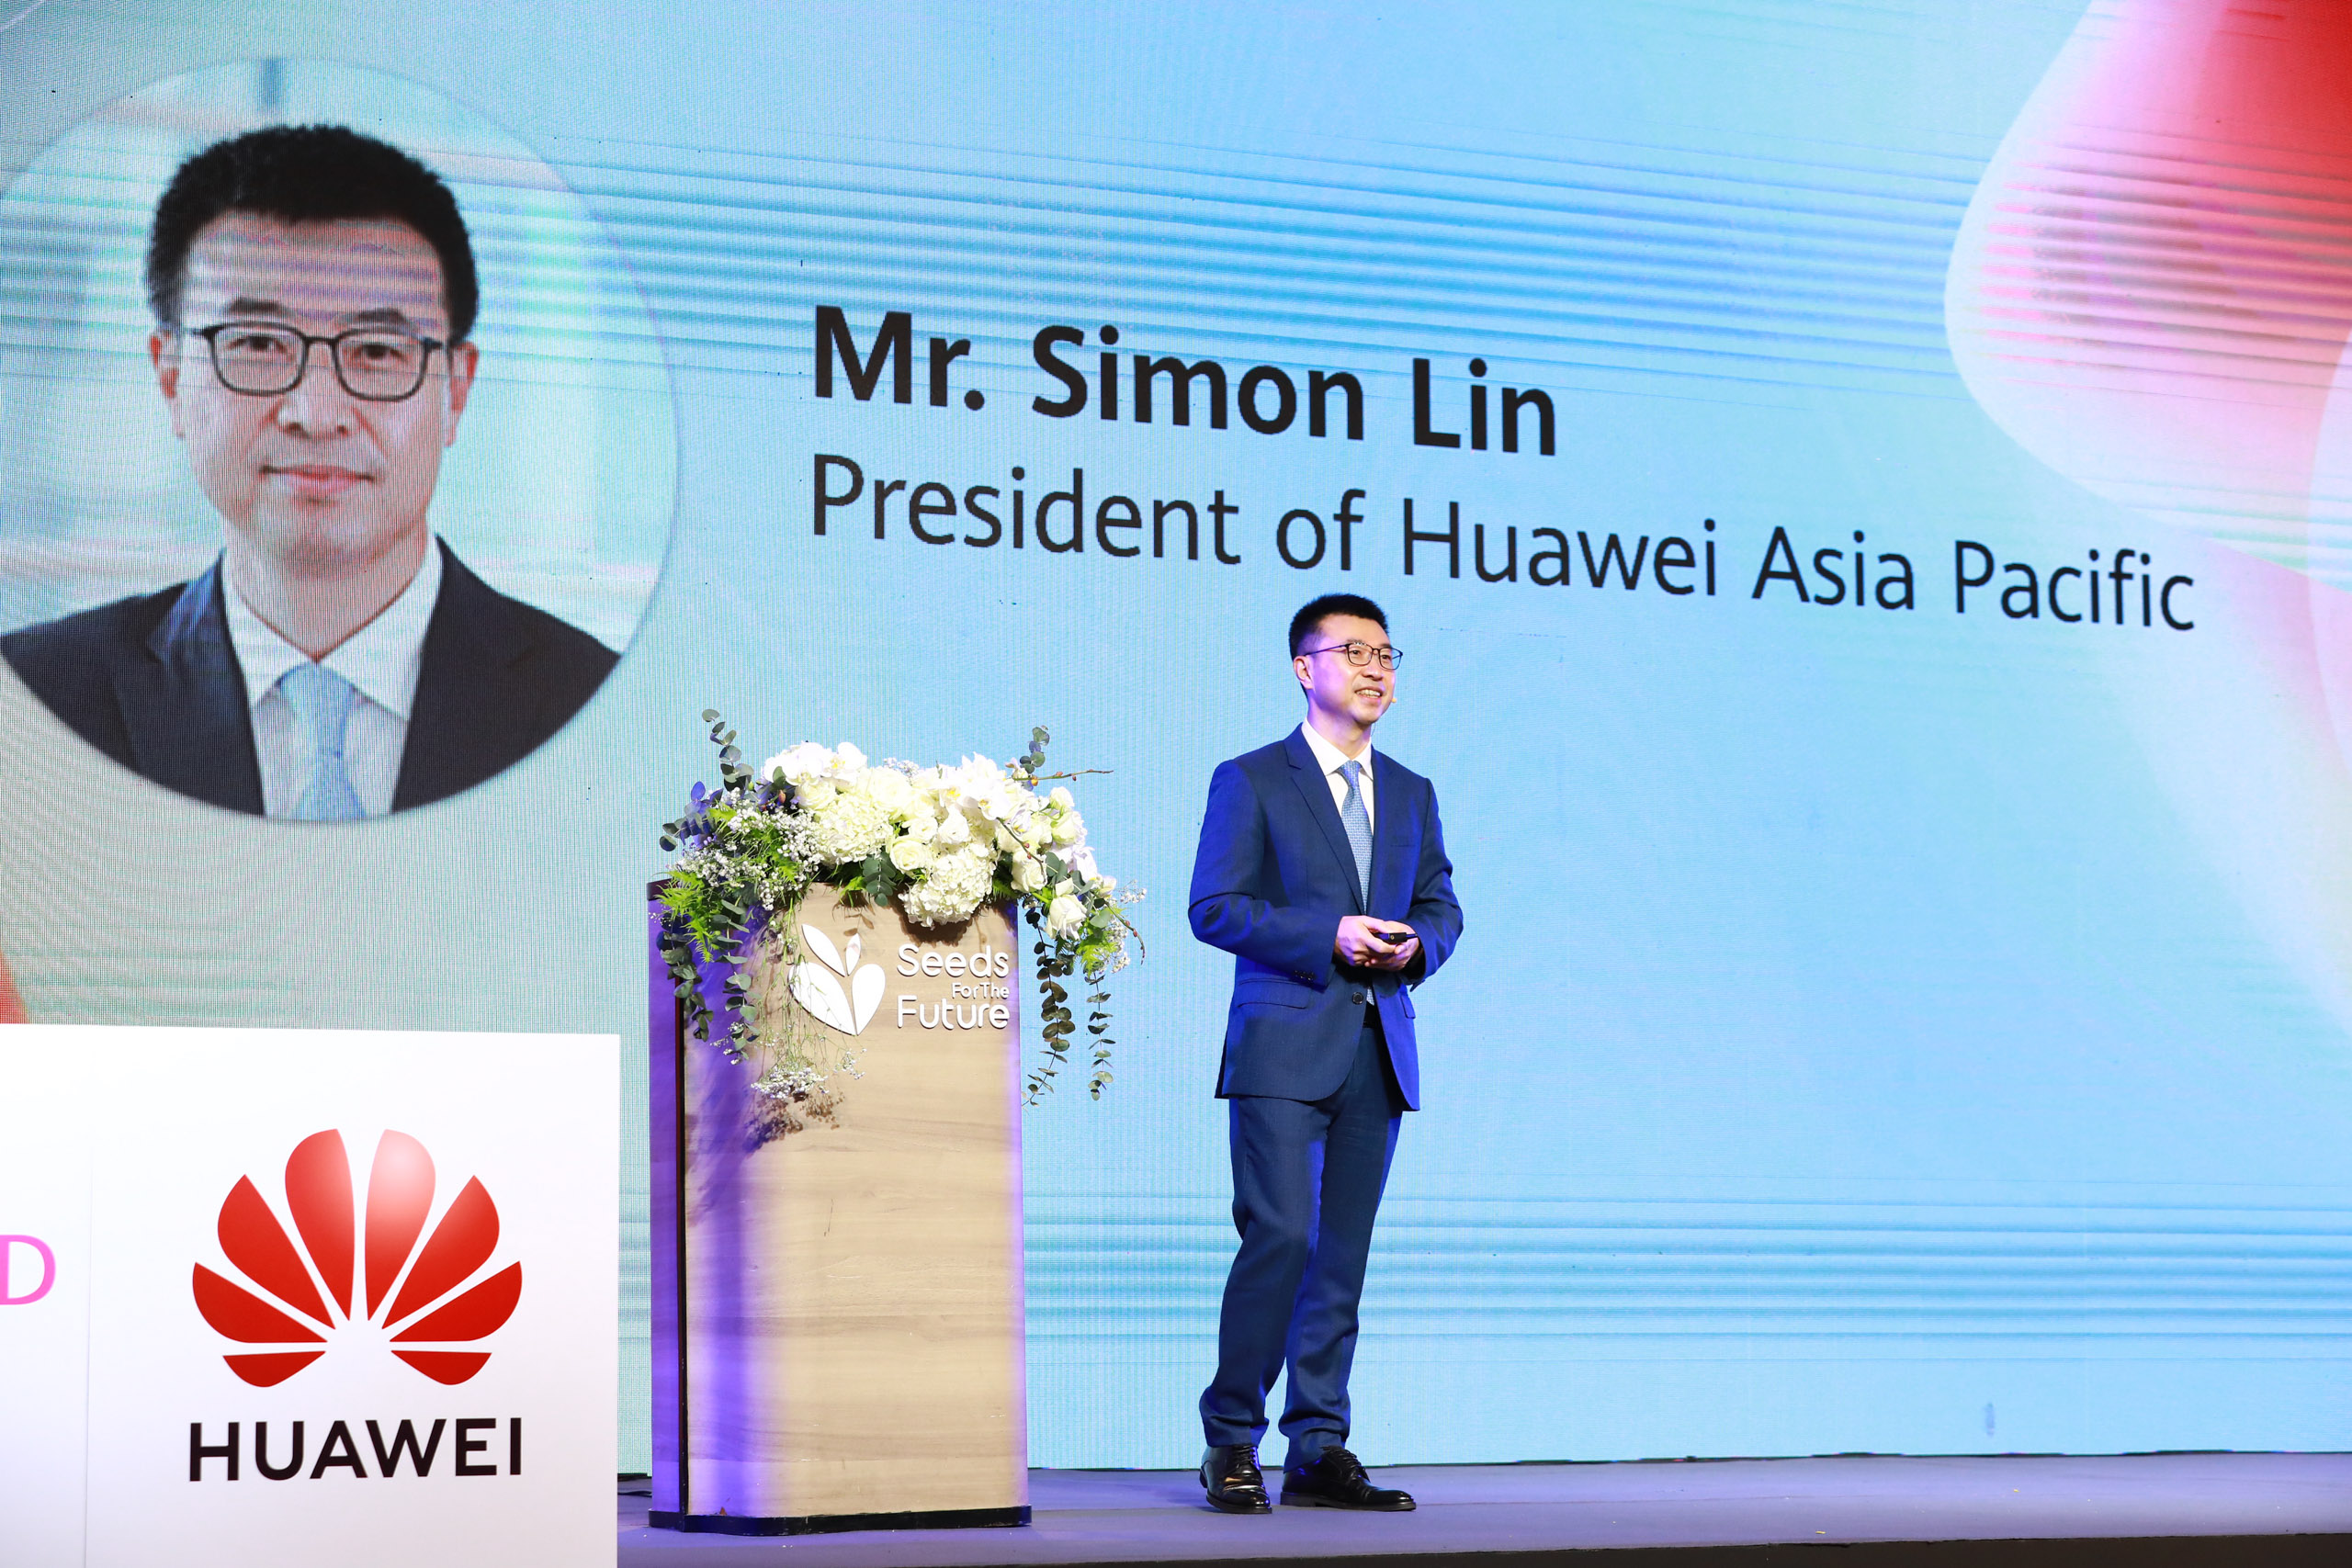 Huawei ra mắt chương trình “Hạt giống cho Tương Lai” lớn nhất khu vực, truyền cảm hứng cho nhân tài số định hình tương lai